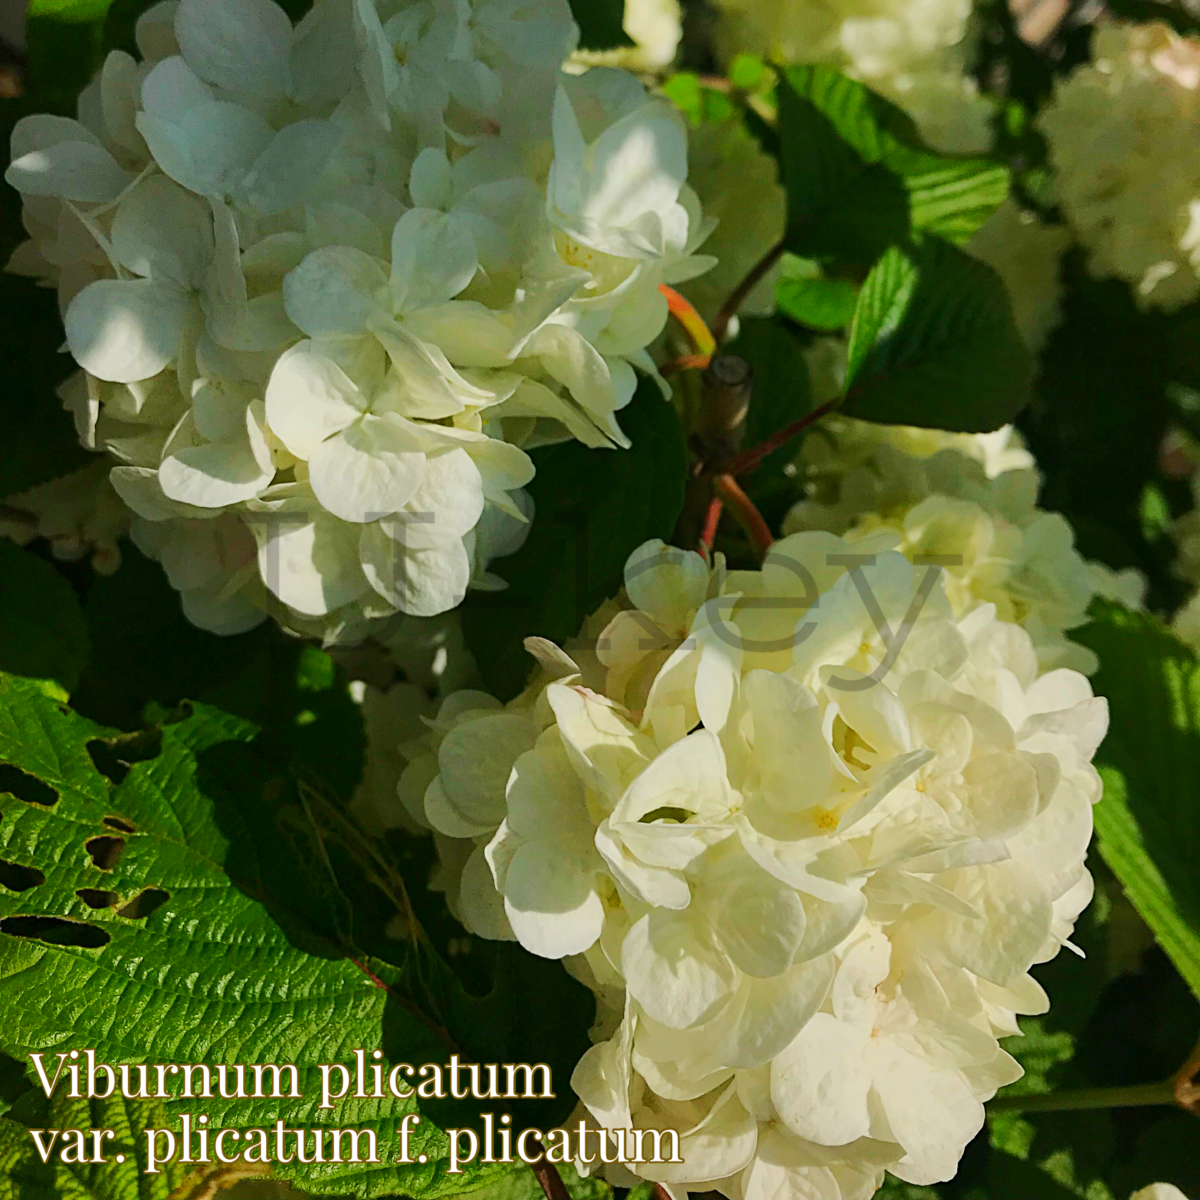 Odemari,Viburnum plicatum var. plicatum f. plicatum